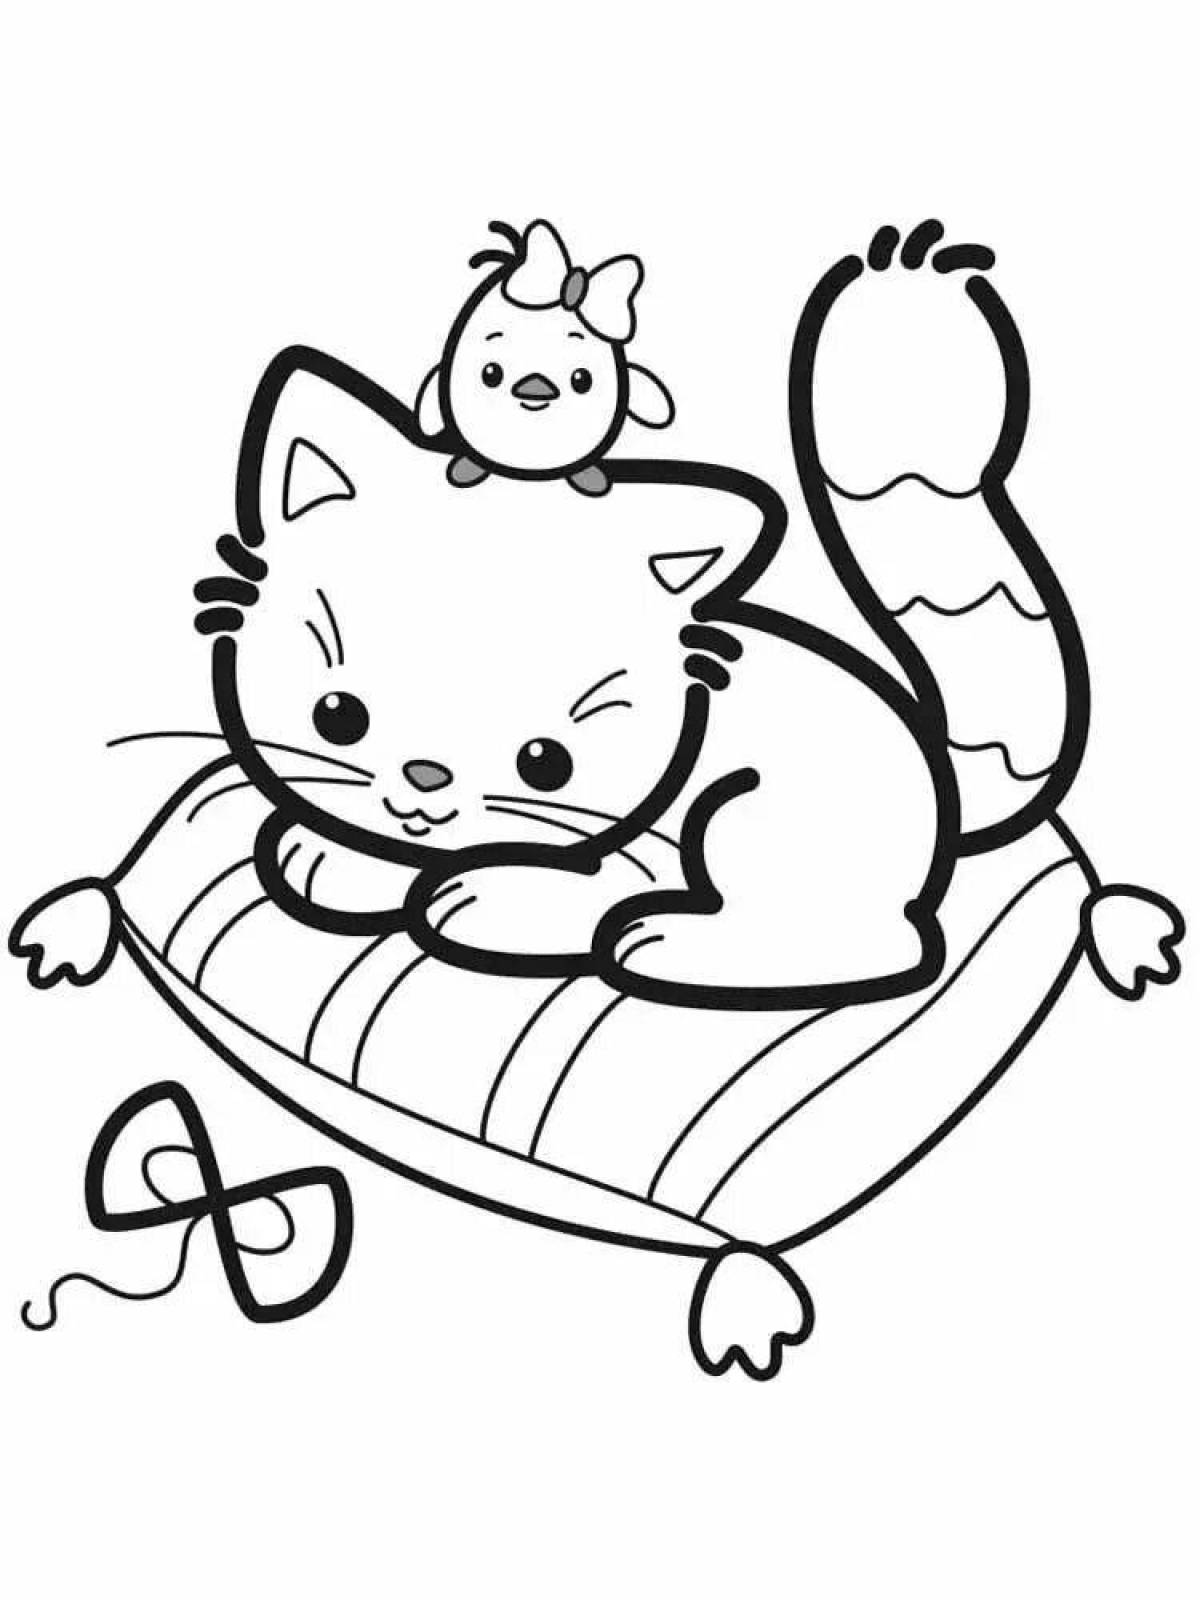 Раскраска с пузырчатым котенком для детей 3-4 лет